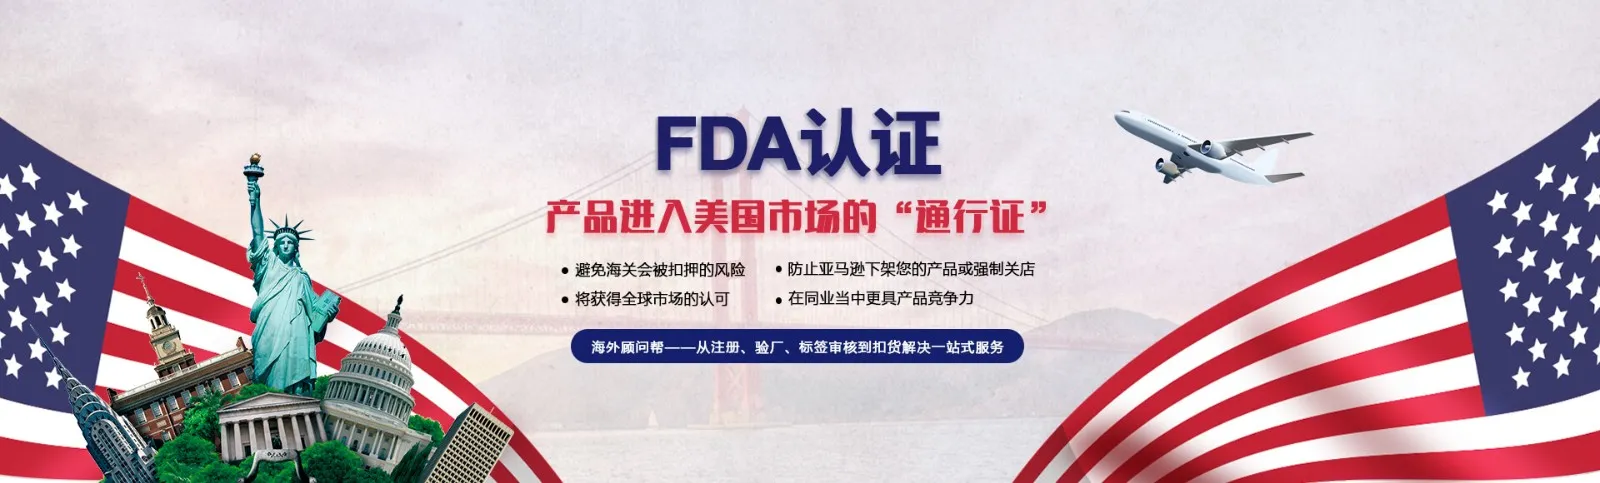 广州辐射、激光产品FDA注册流程咨询中心